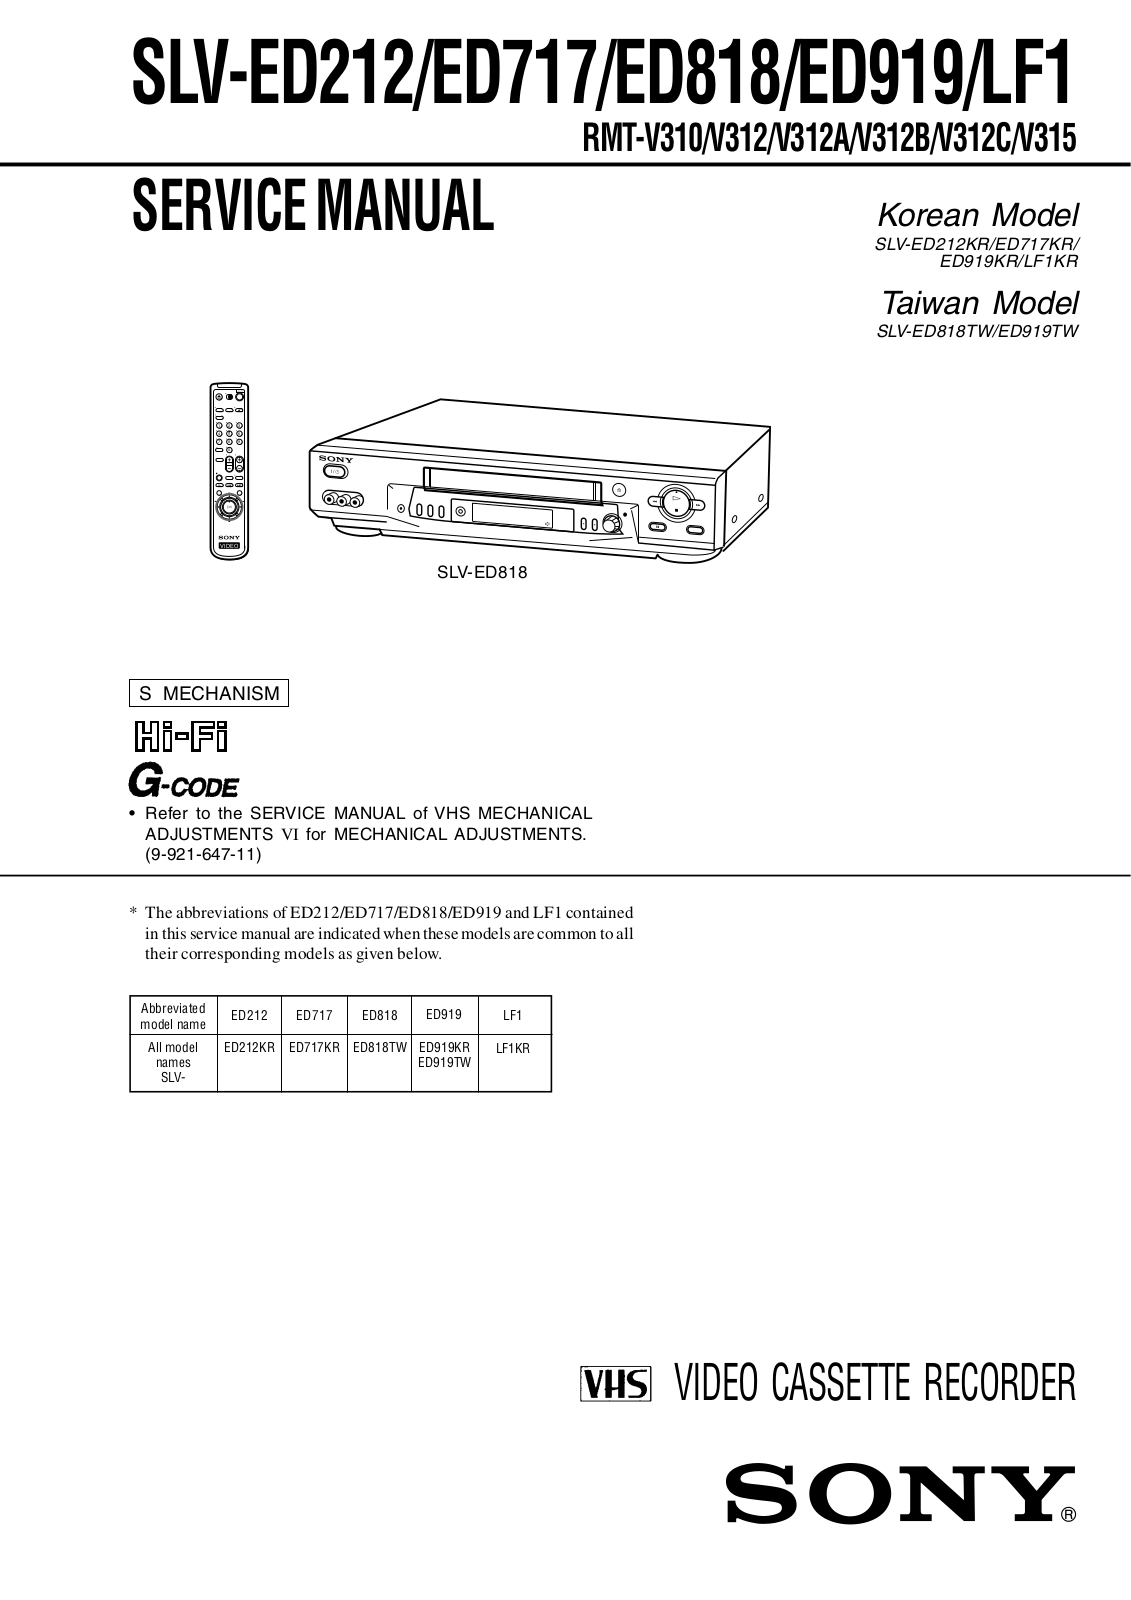 Sony SLV-ED212, SLV-ED717, SLV-ED818, SLV-ED919 Service manual